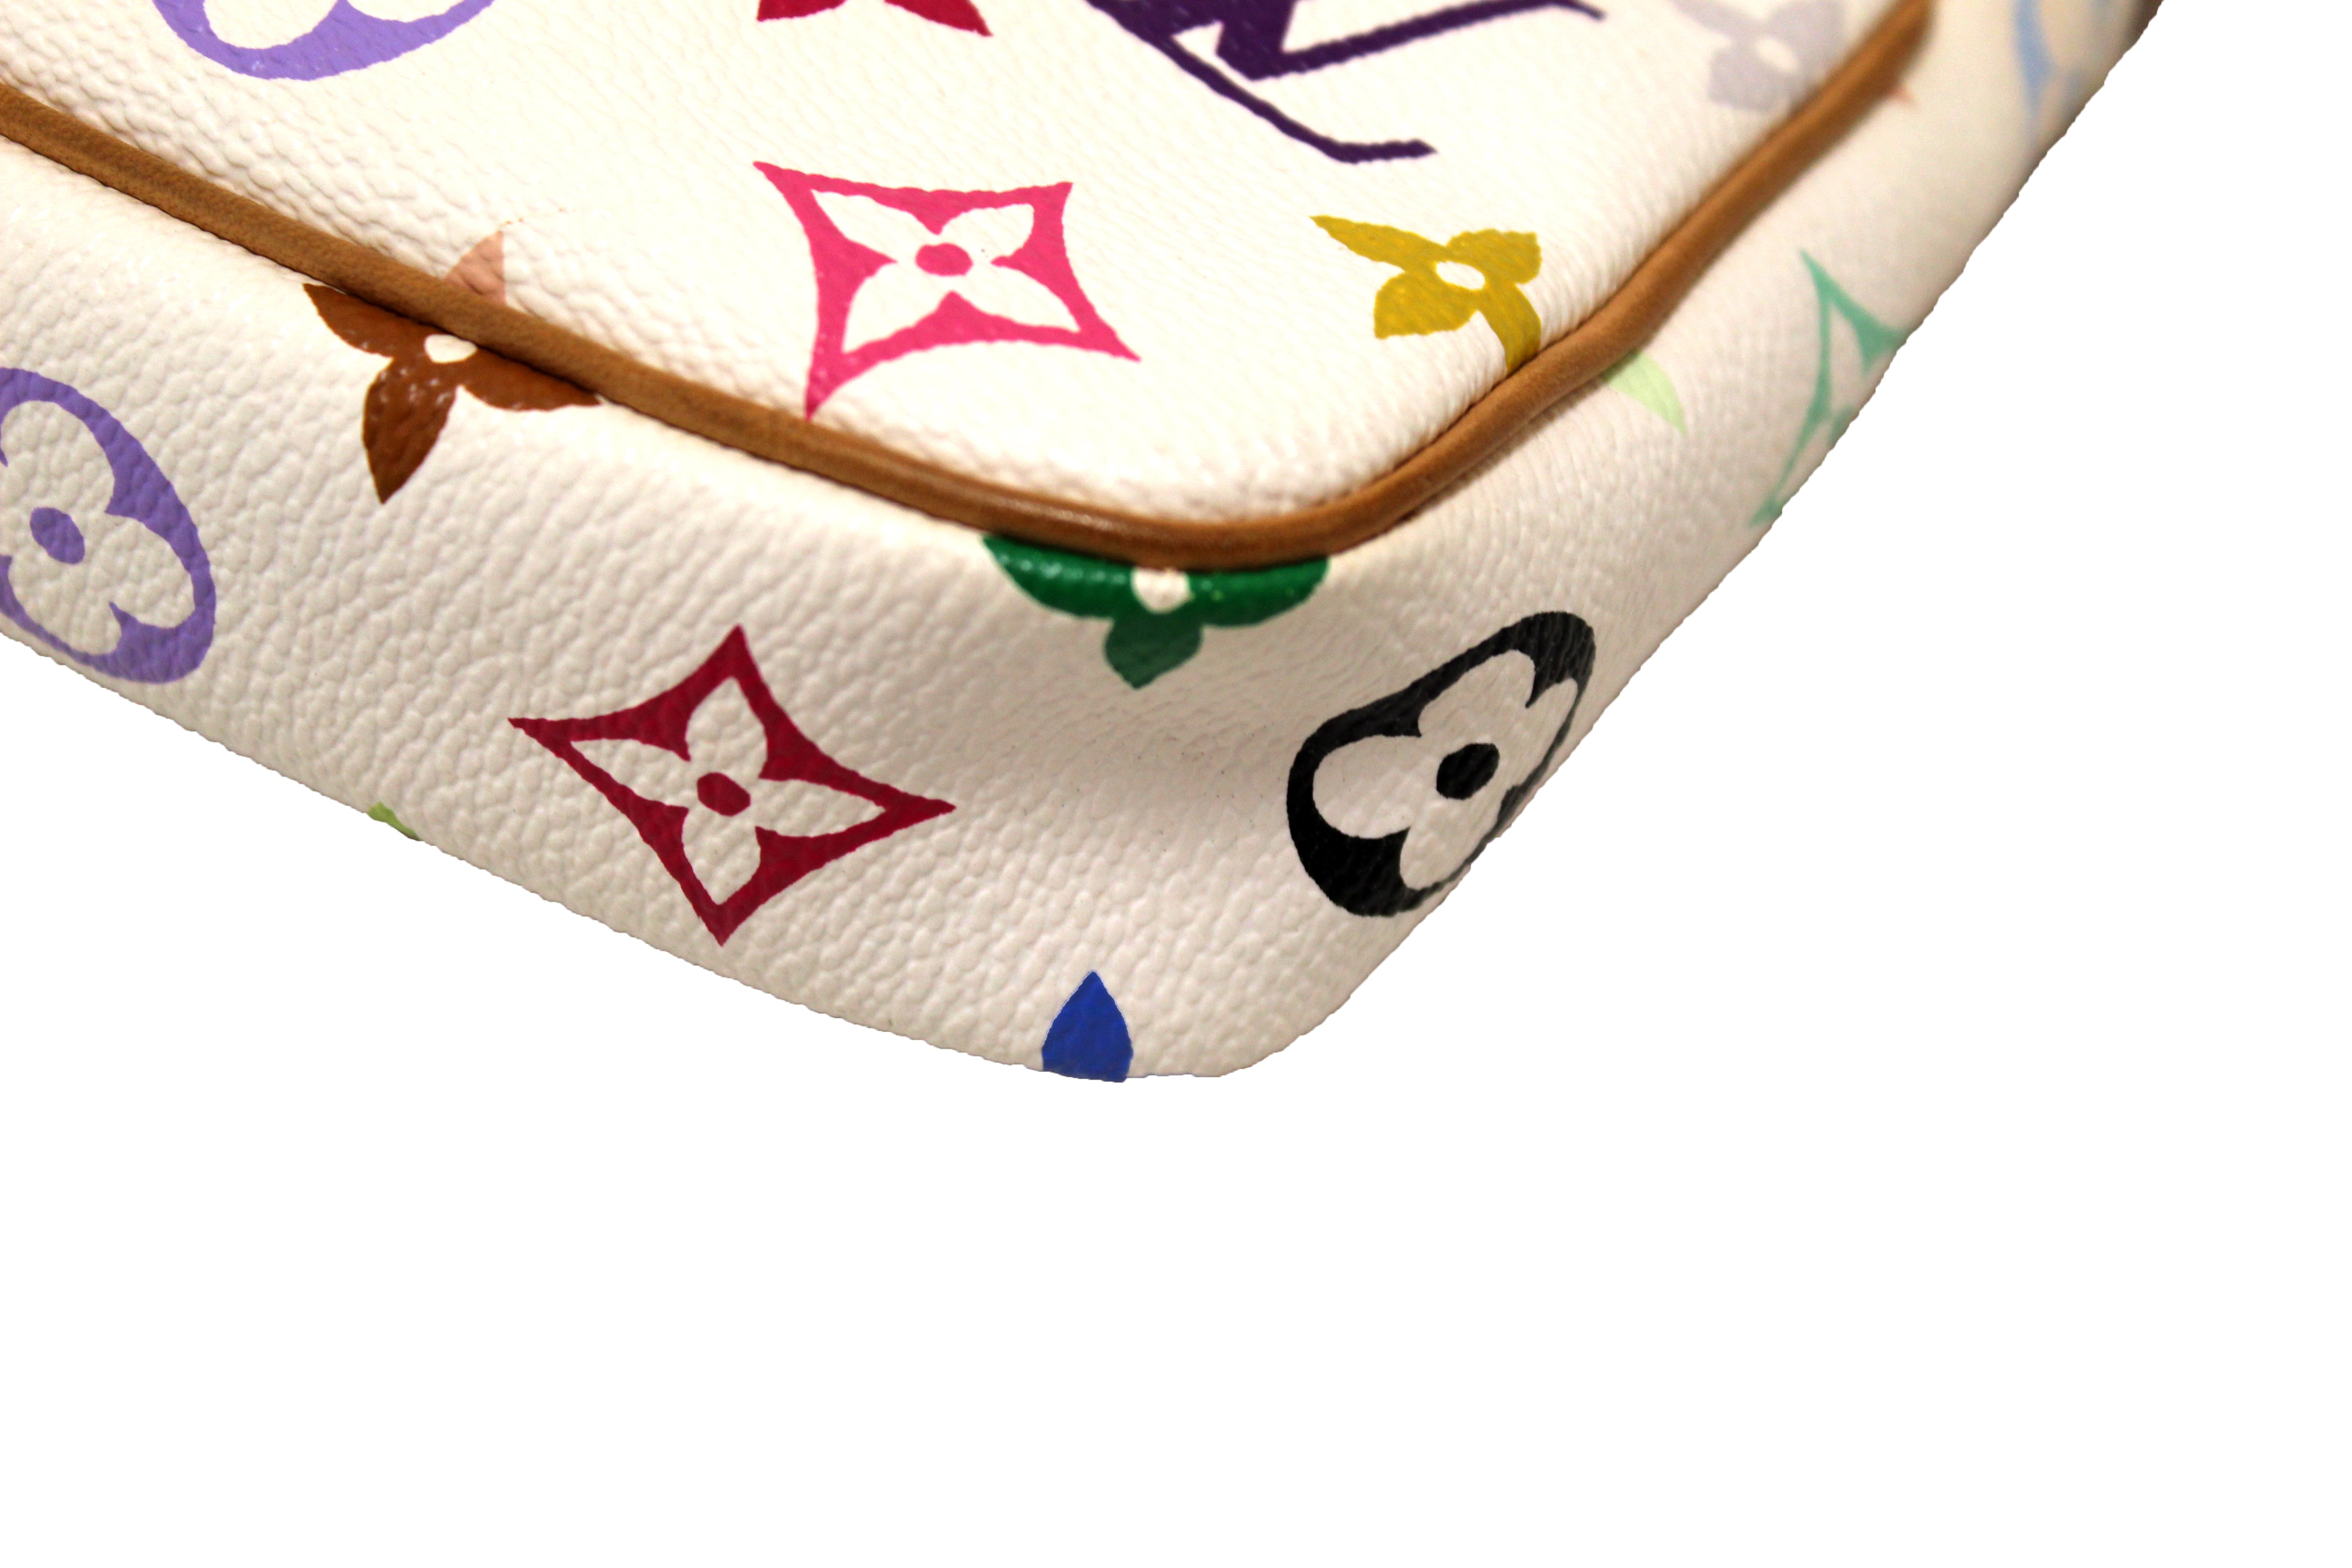 Louis Vuitton Monogram Multicolore Pochette Accessoires - White Mini Bags,  Handbags - LOU101741